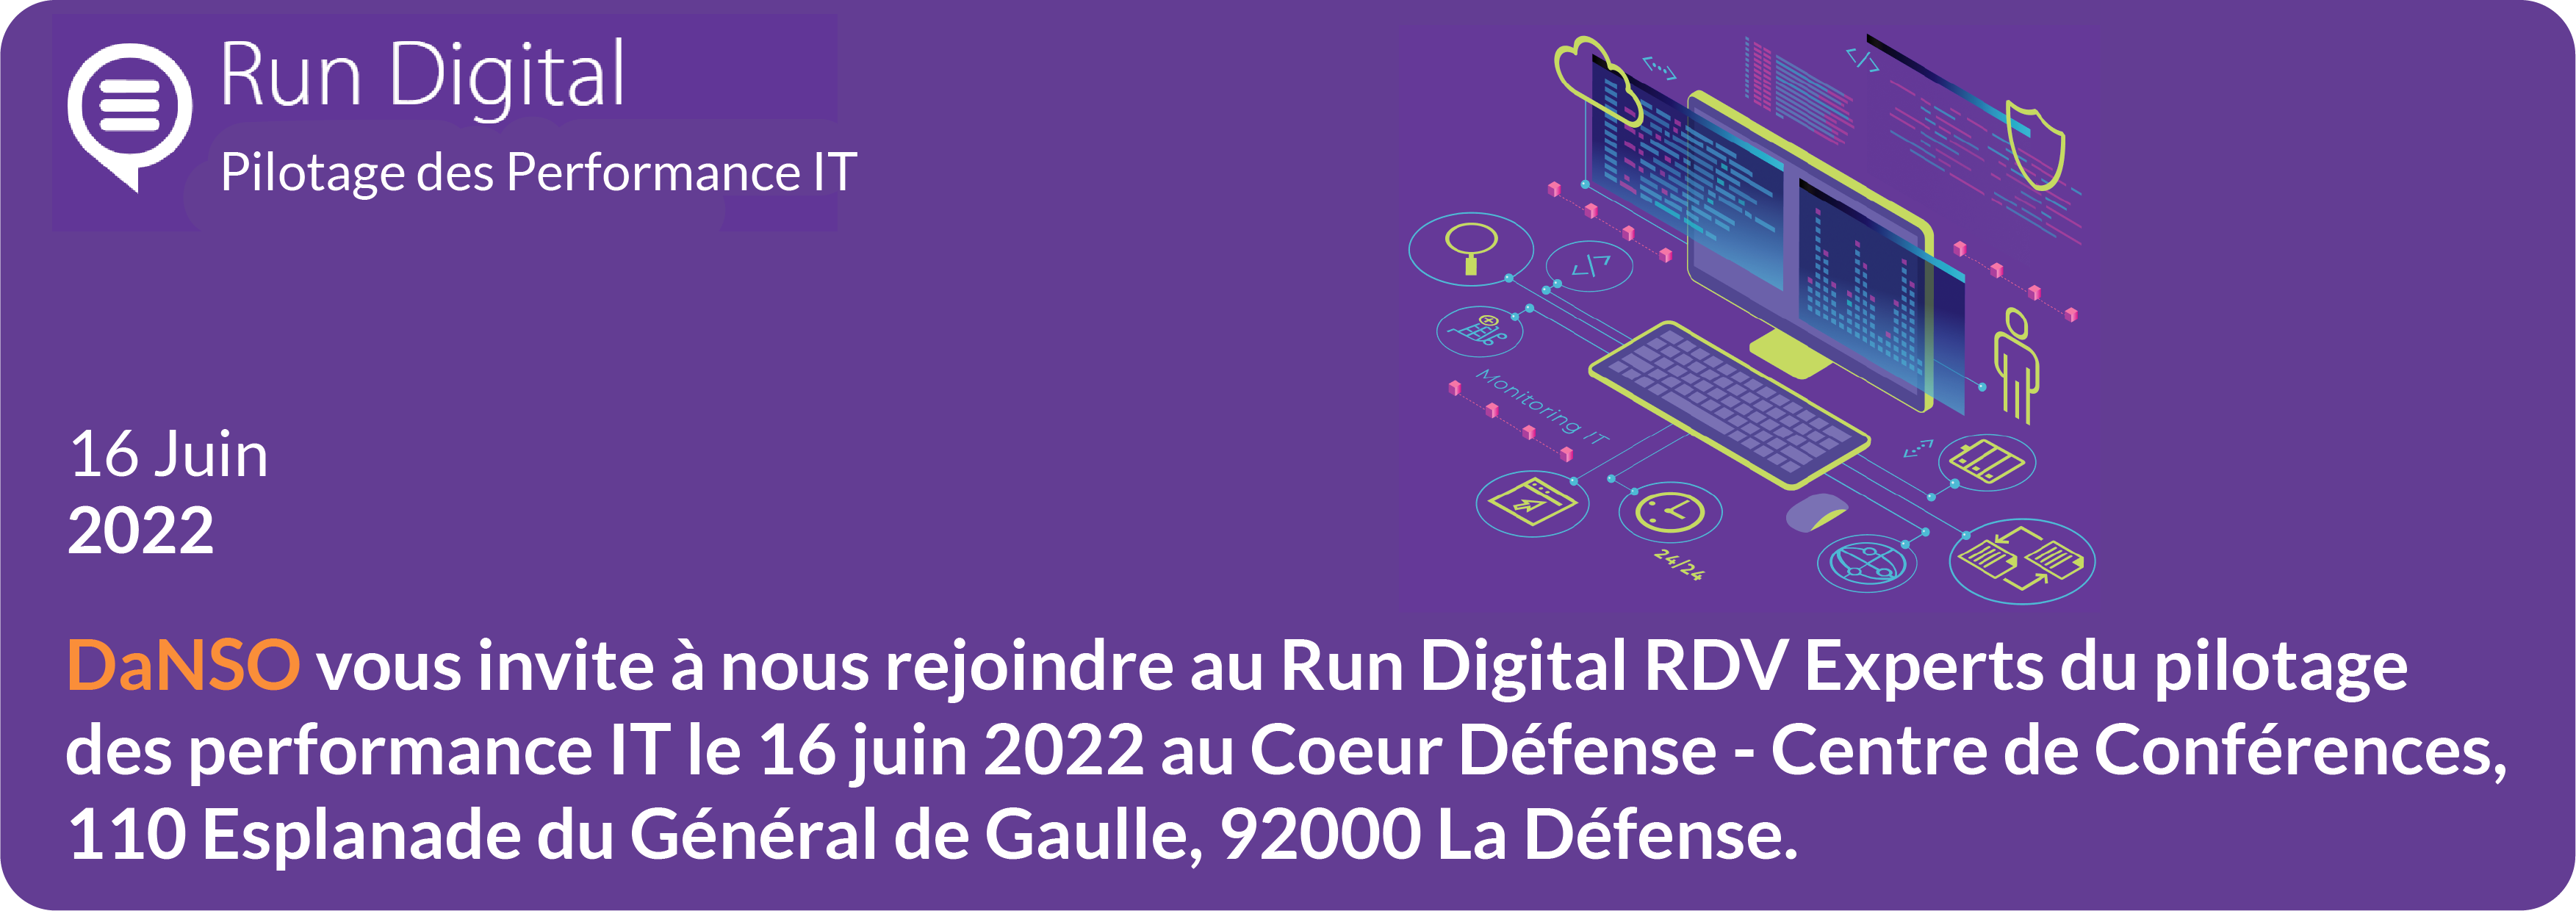 Run Digital Paris